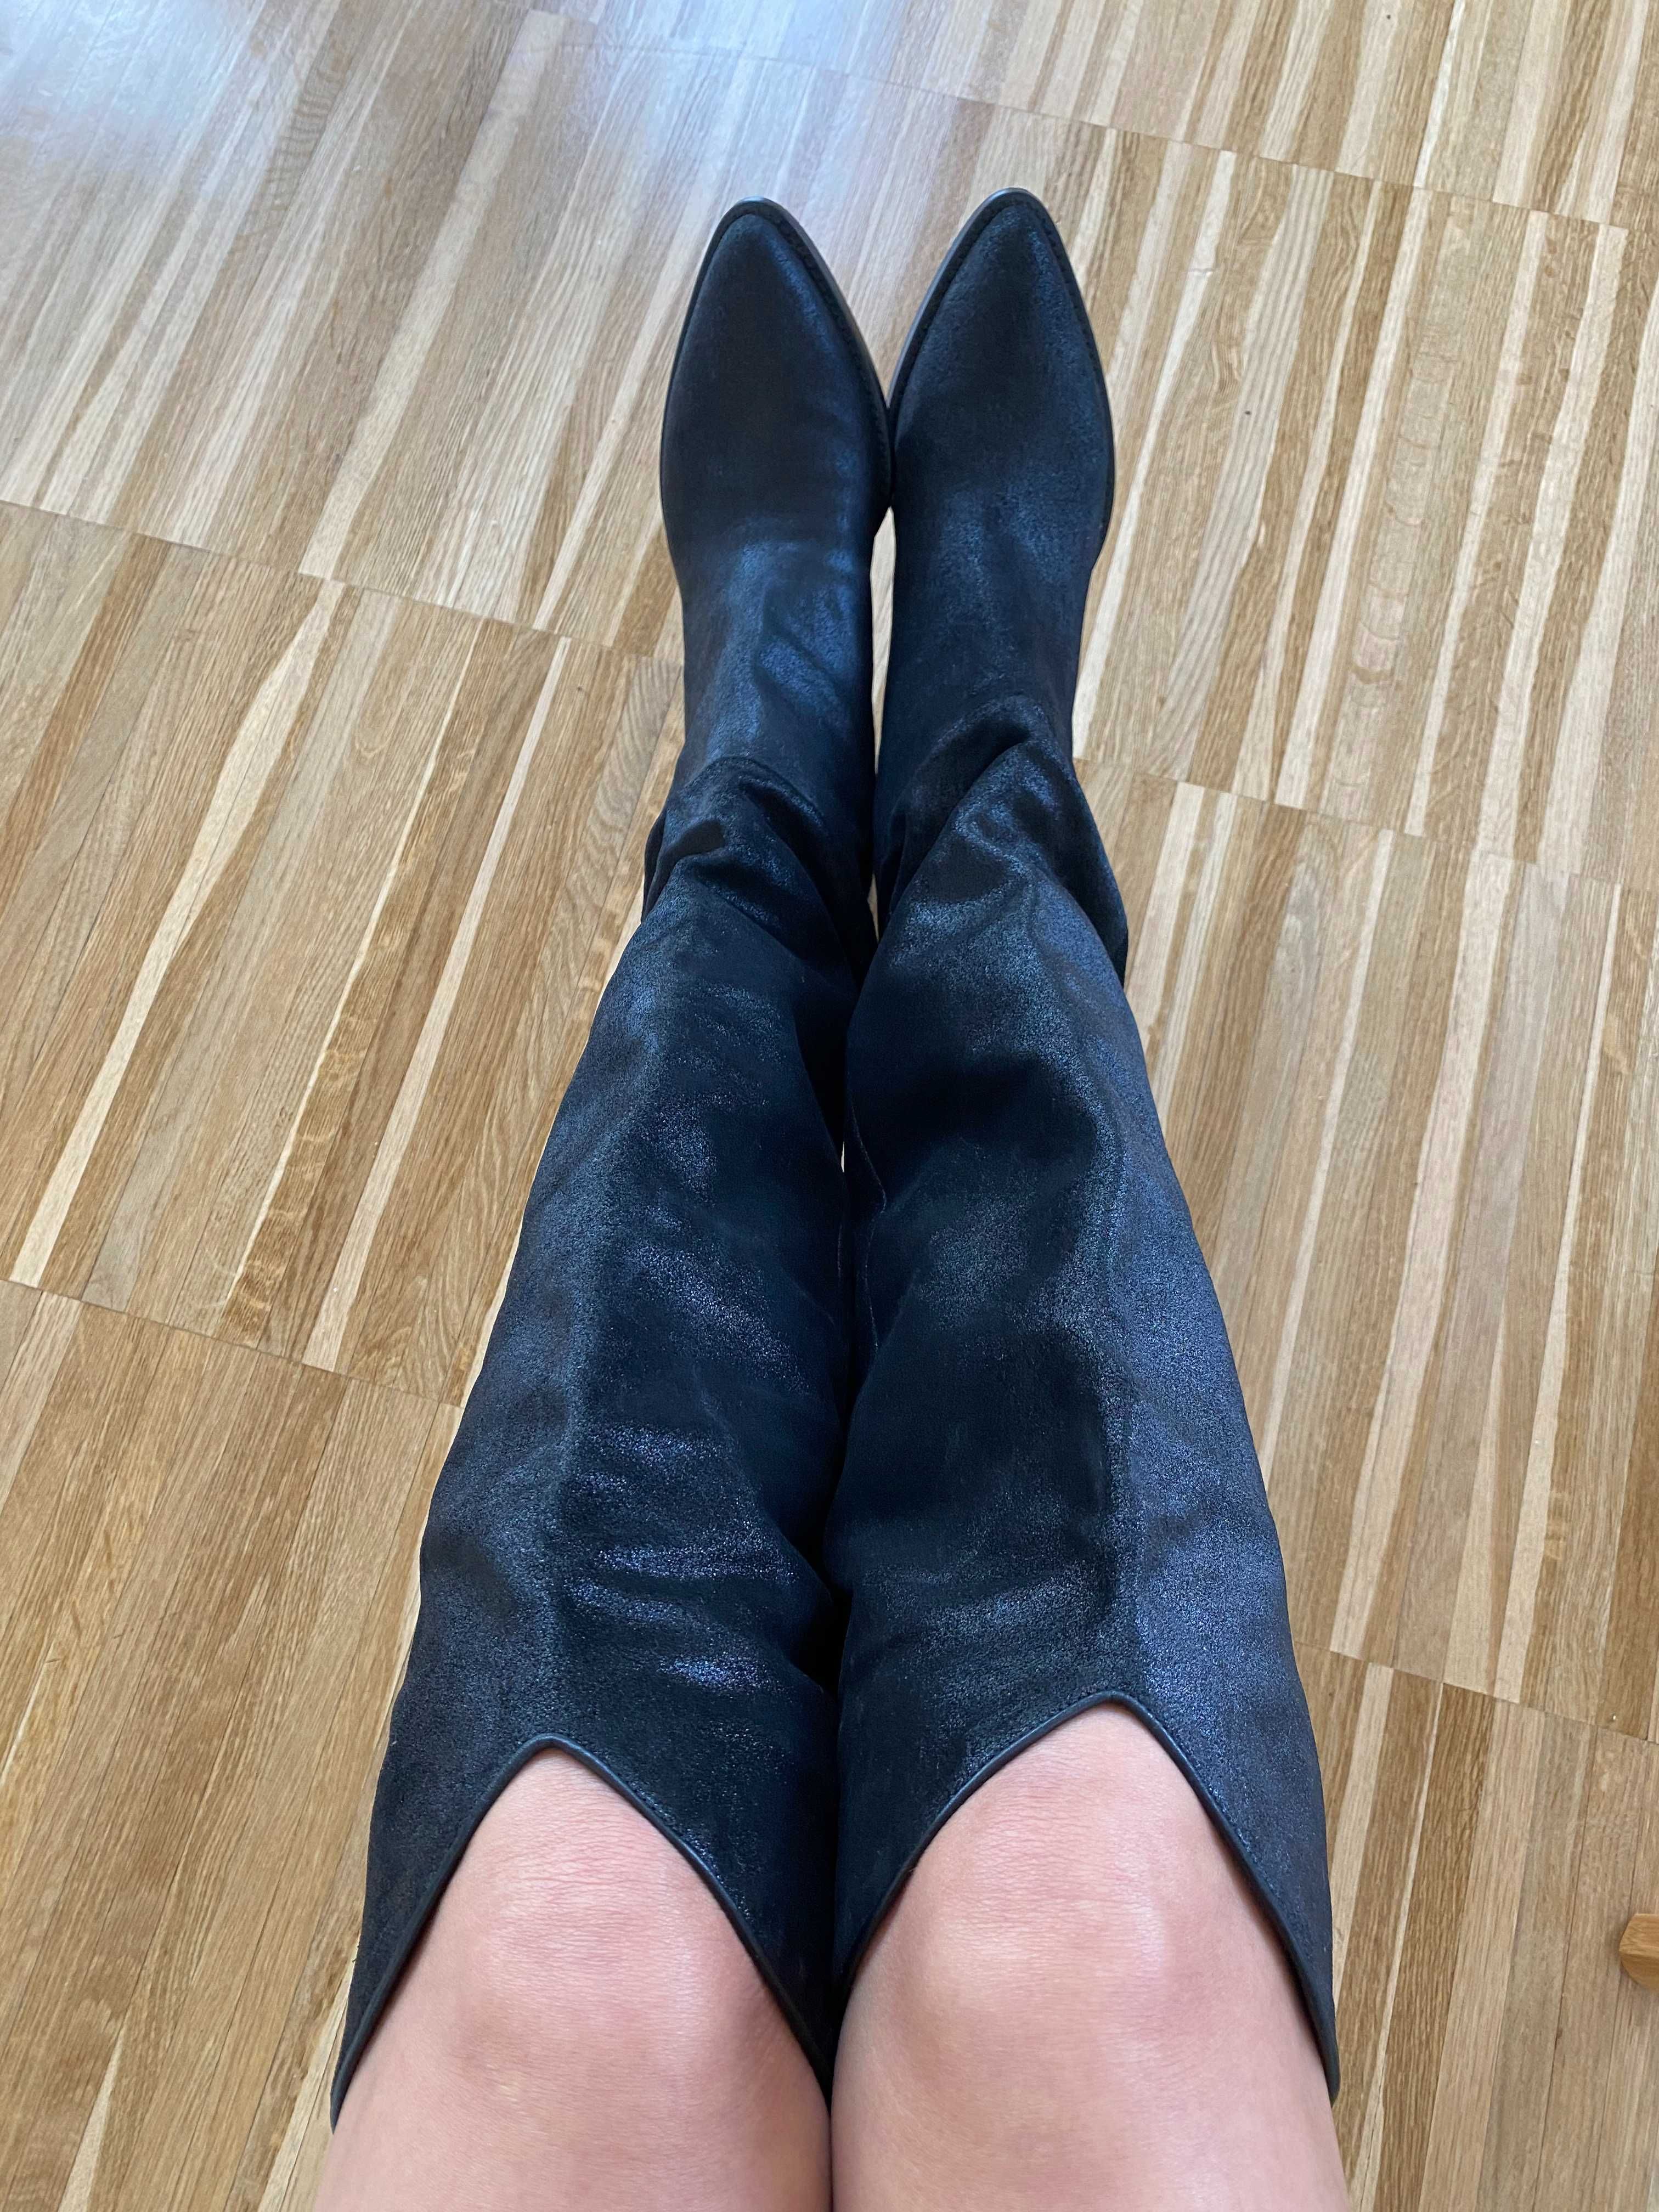 Musette - Cizme cowboy boots - din piele intoarsa, neagra sclipitoare